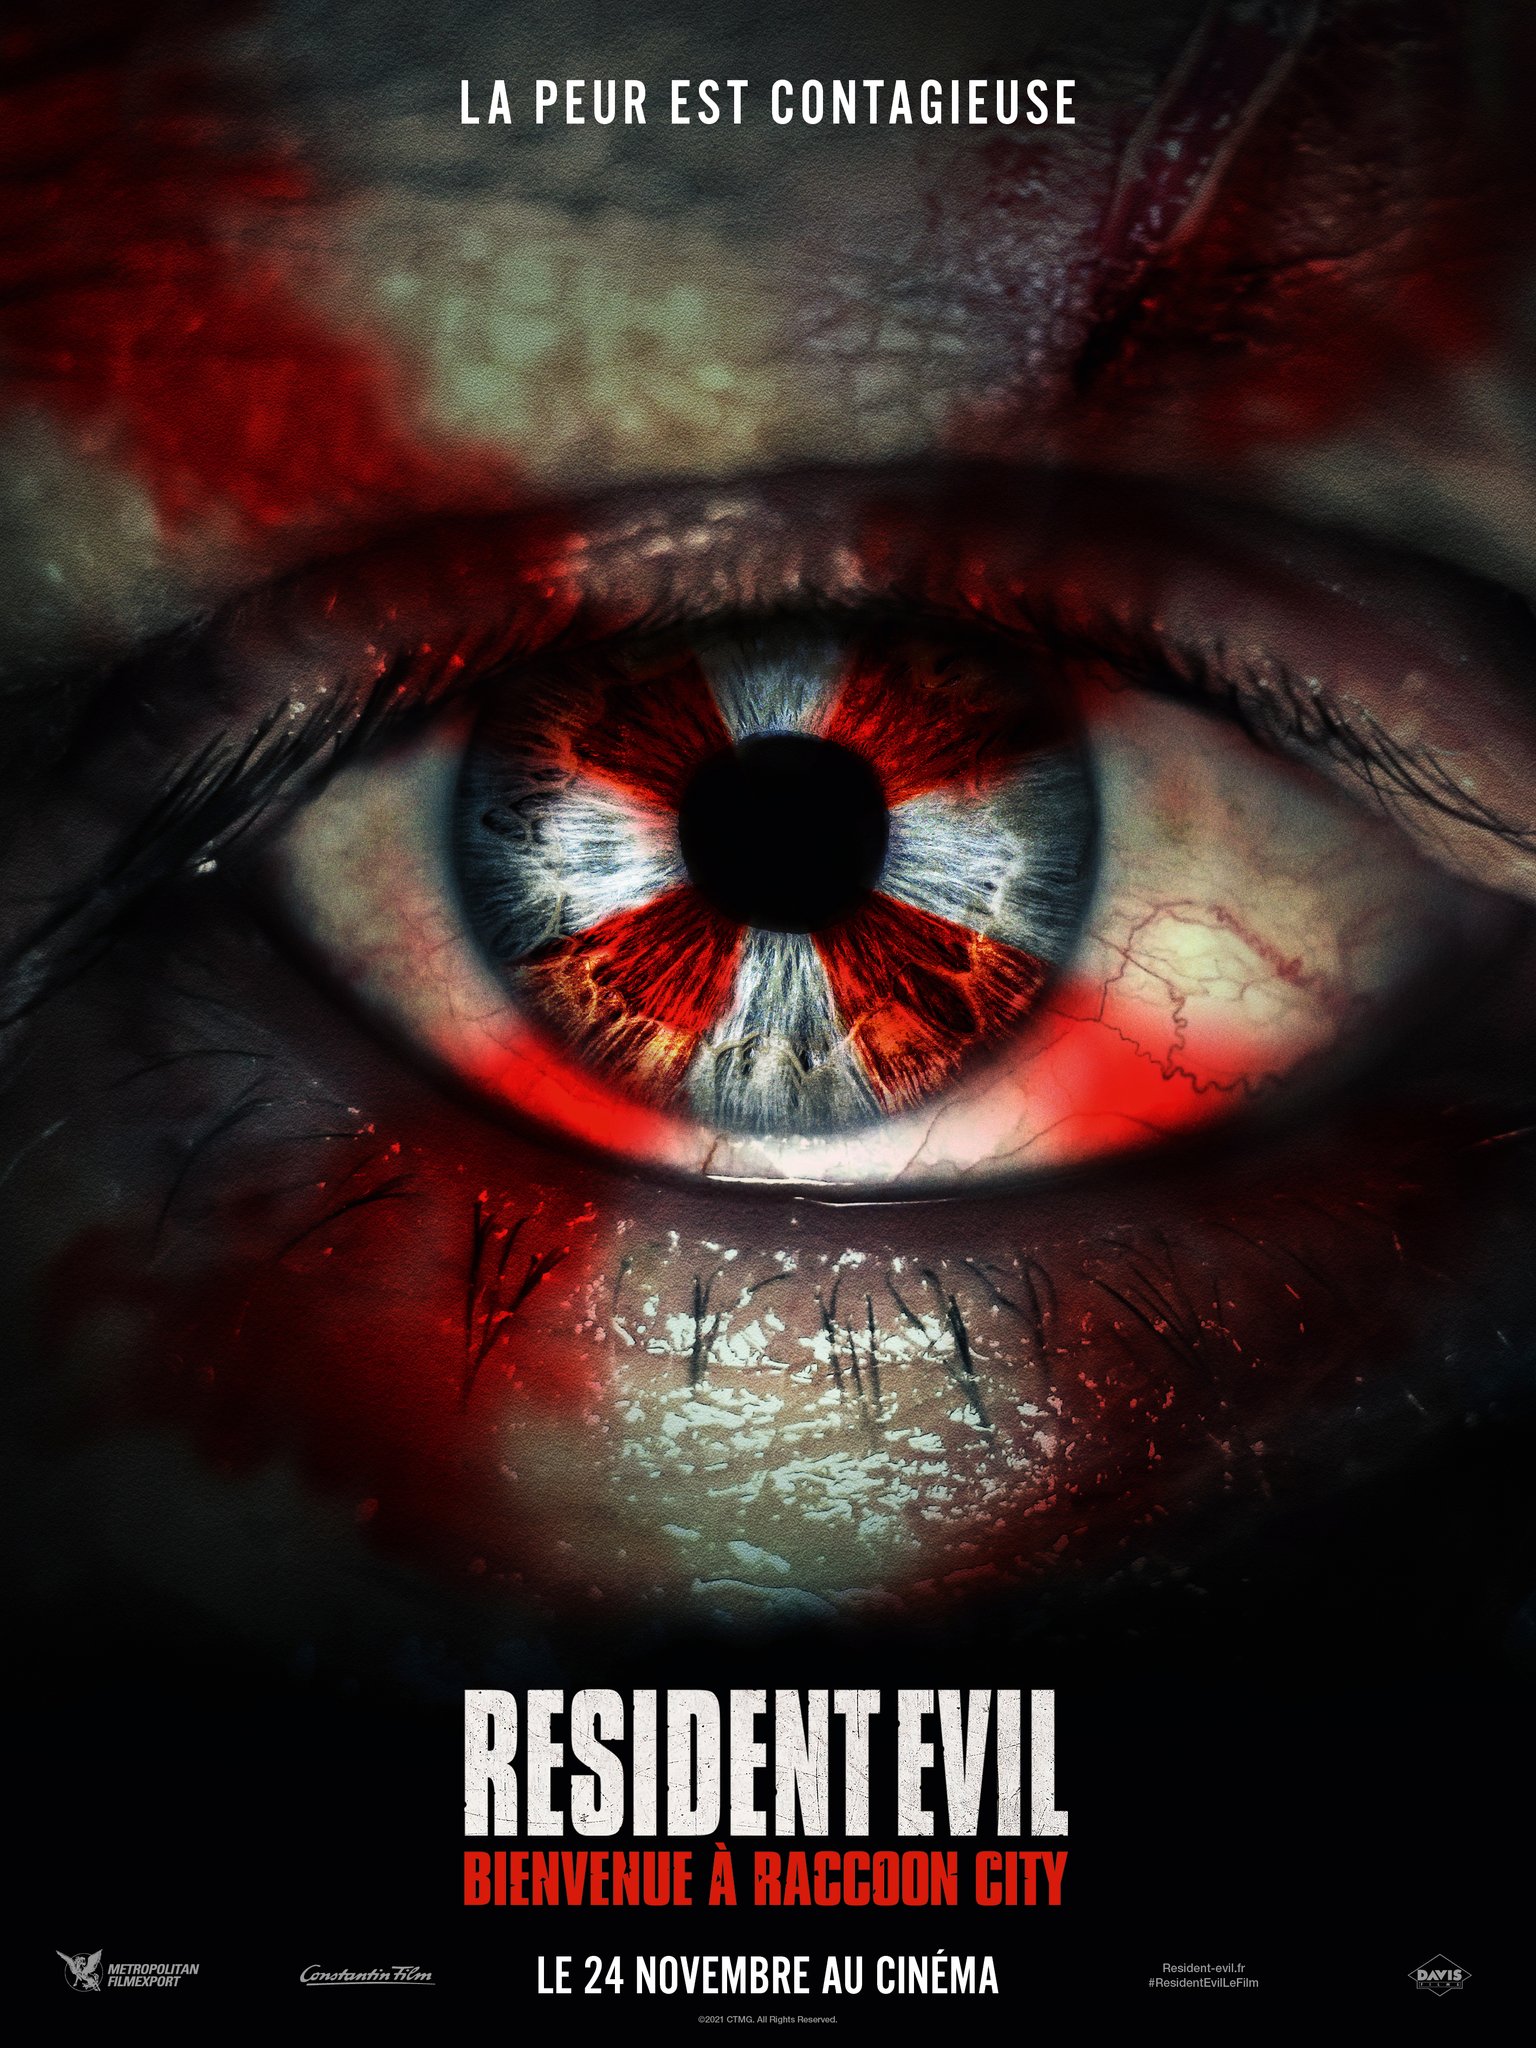 [News] La saga Resident Evil rebootée ! FBG6zEyXIA8TApv?format=jpg&name=large